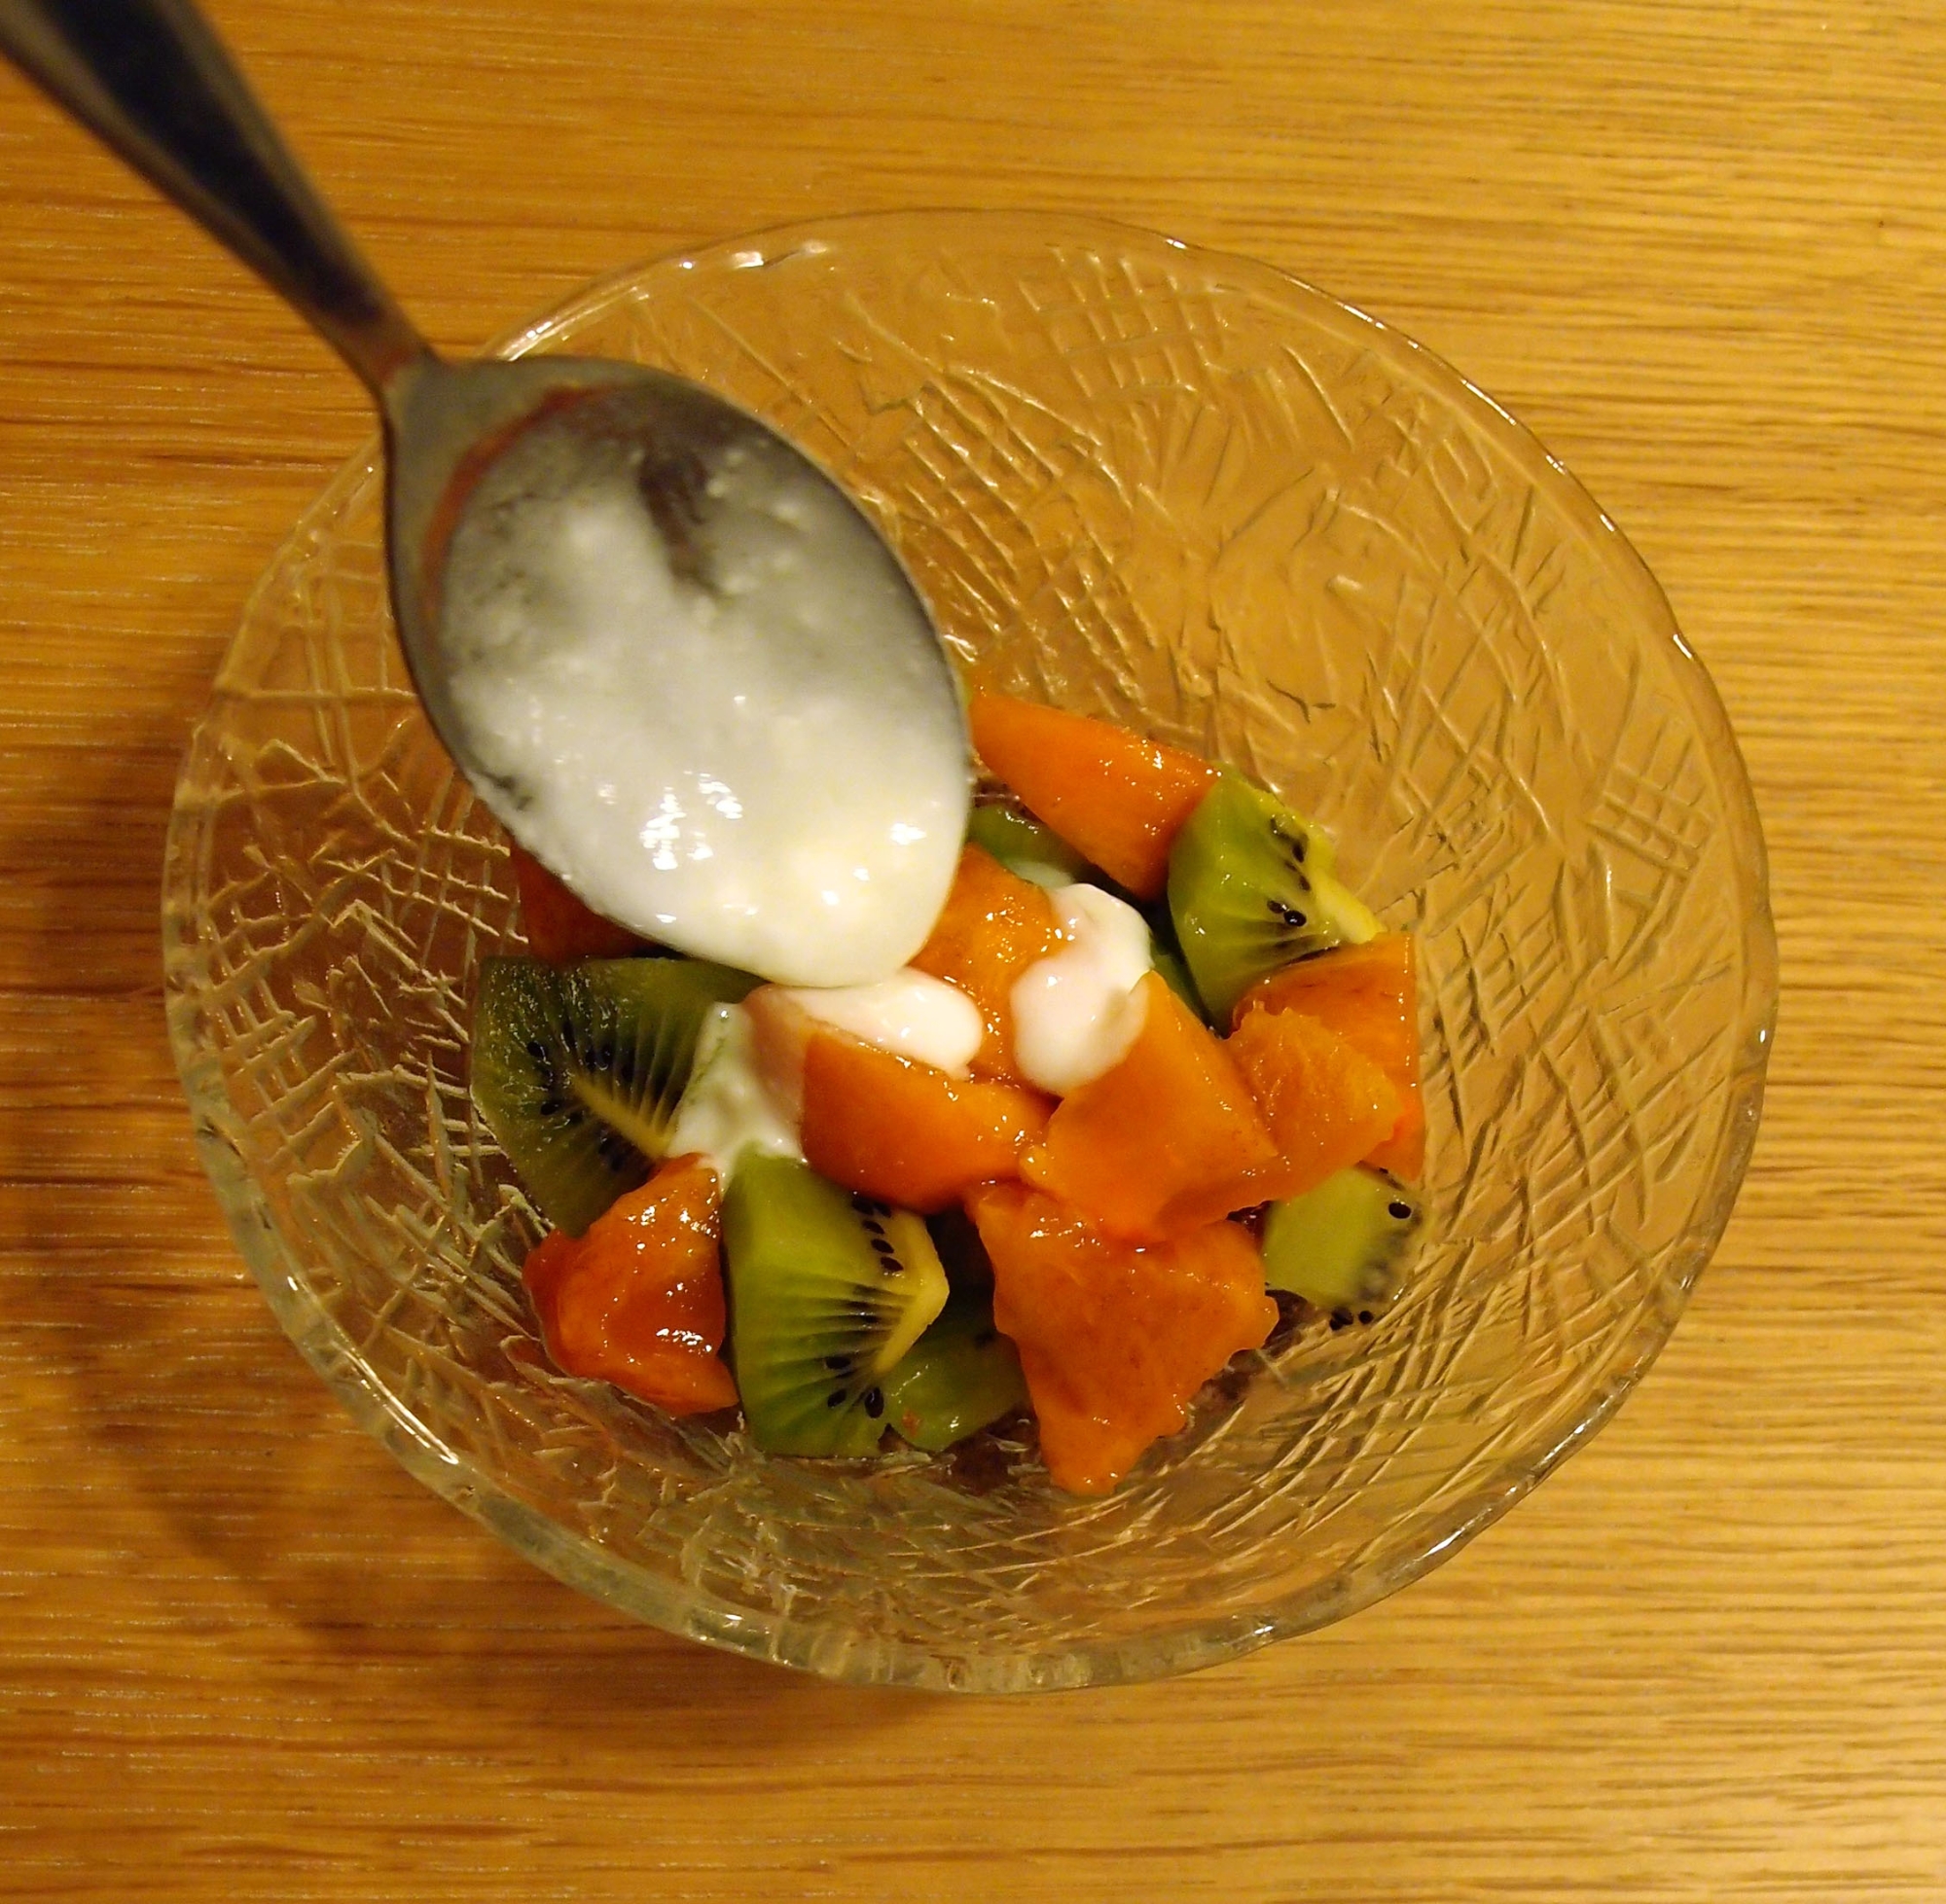 ヨーグルトソースで食べるキウイと柿のサラダ